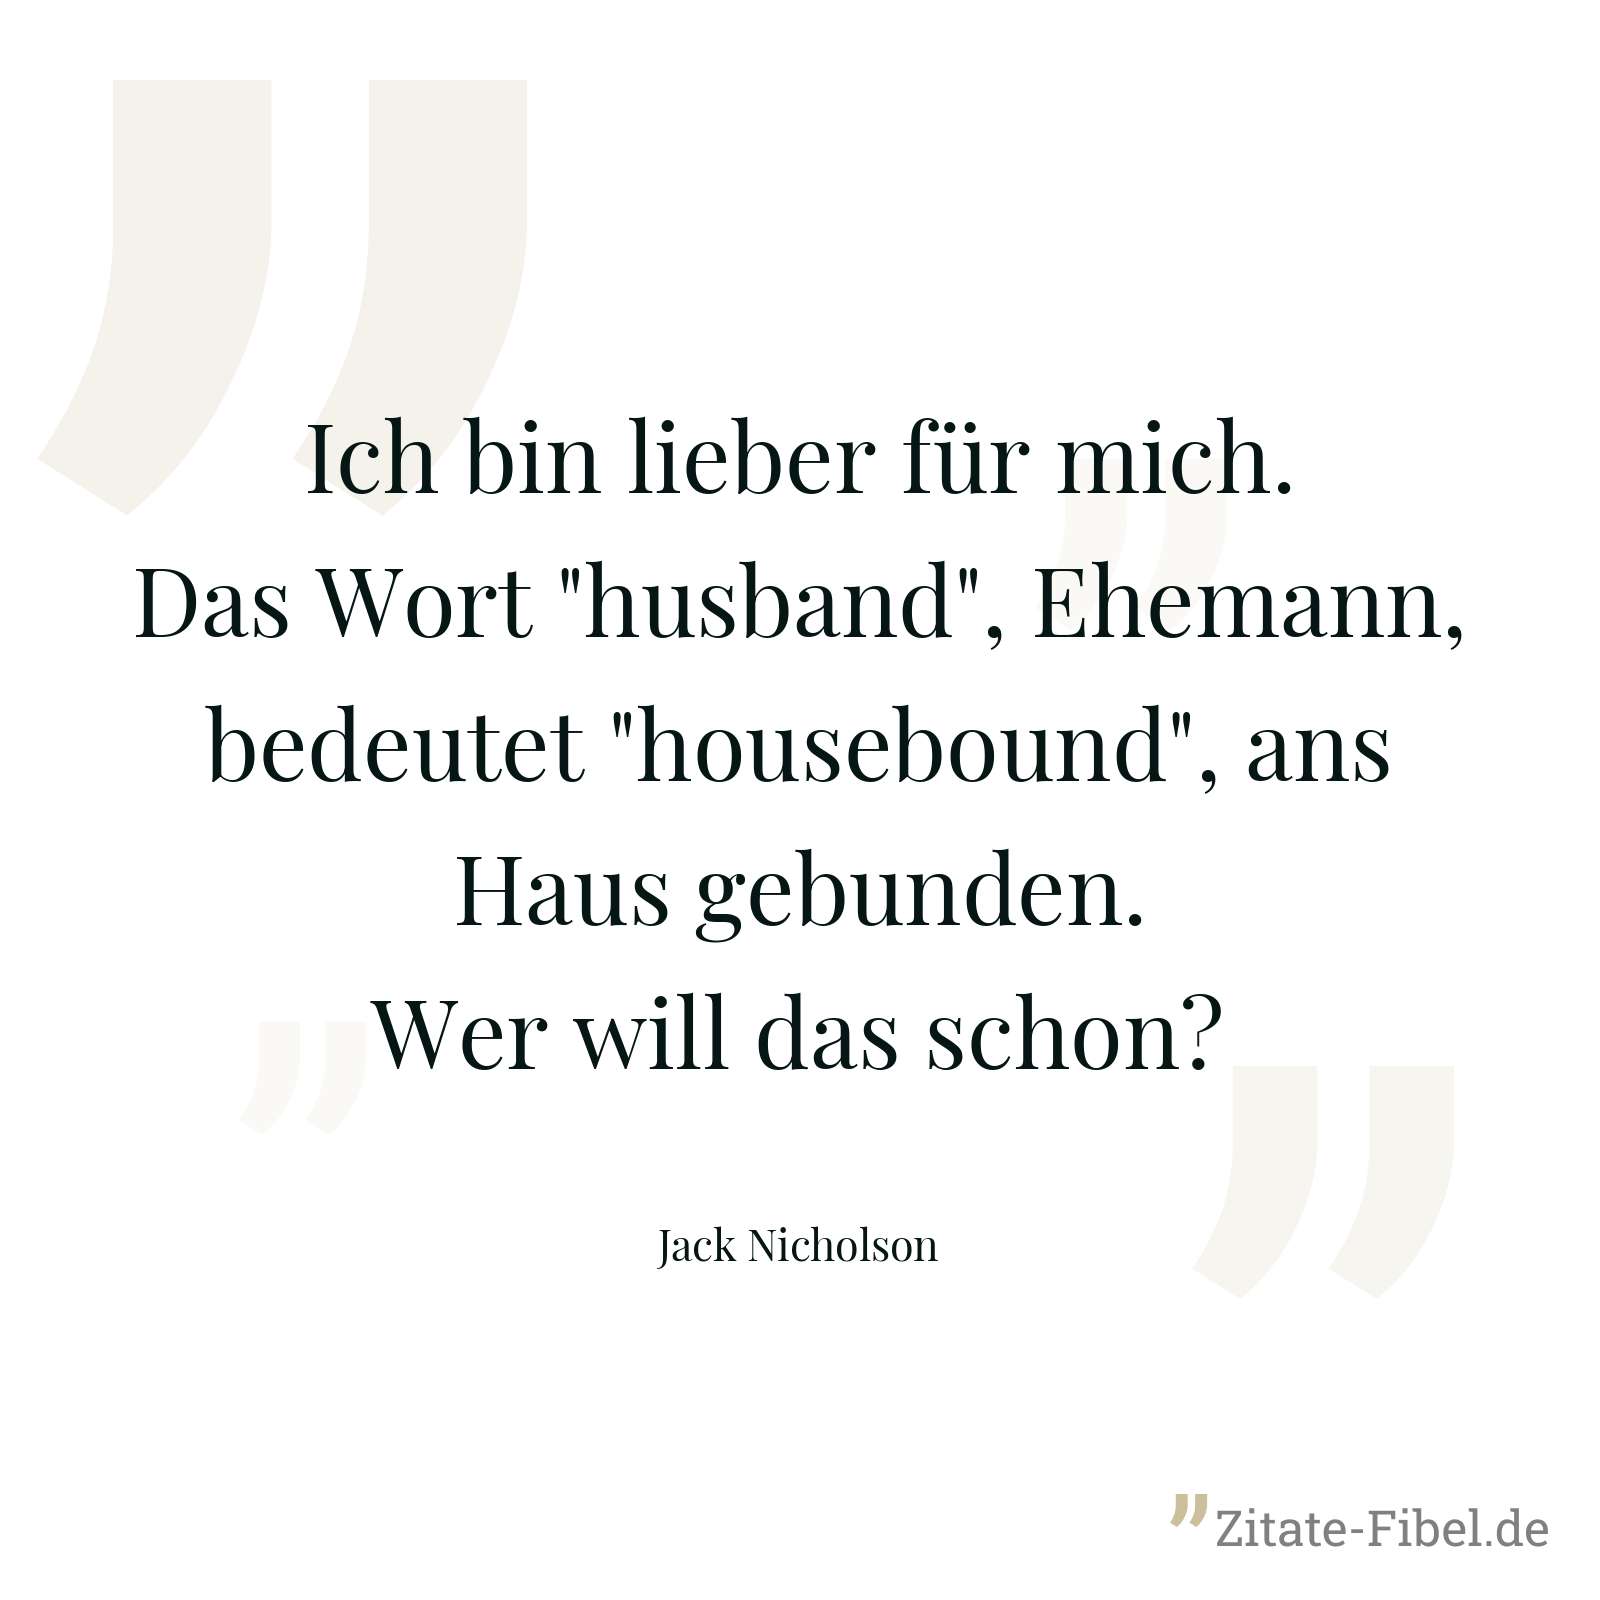 Ich bin lieber für mich. Das Wort "husband", Ehemann, bedeutet "housebound", ans Haus gebunden. Wer will das schon? - Jack Nicholson